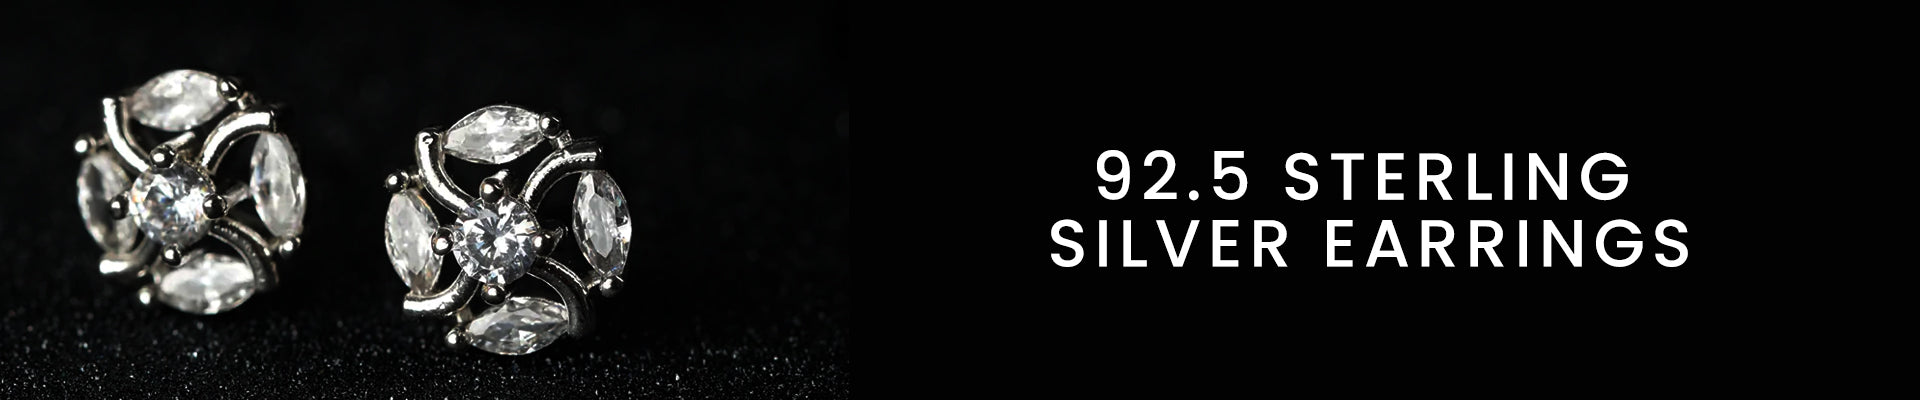 92.5 Sterling Silver Earrings